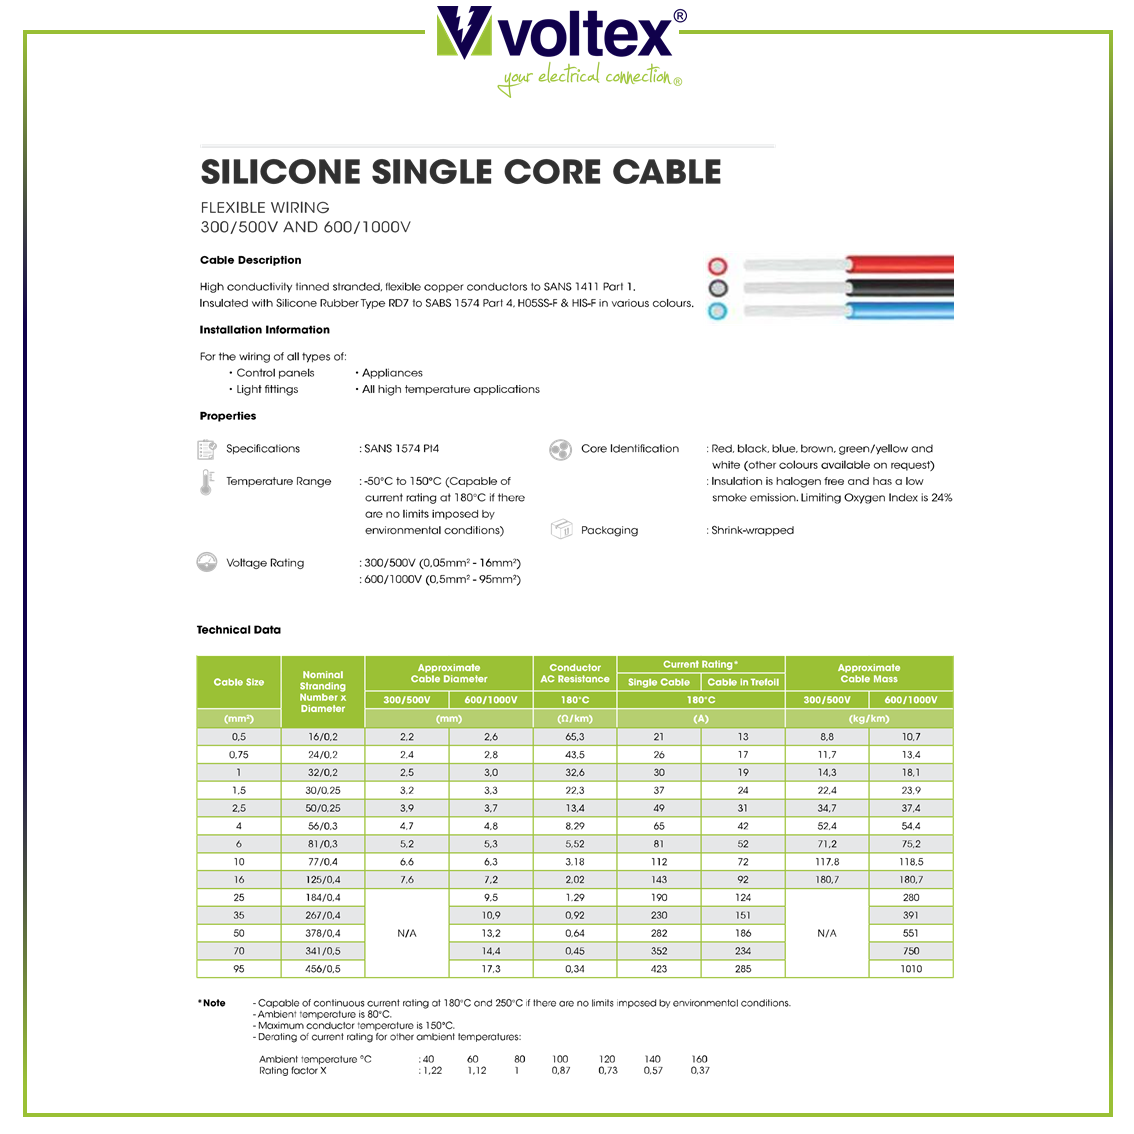 VOLTEX - Silicon Single Core Cable Catalogue